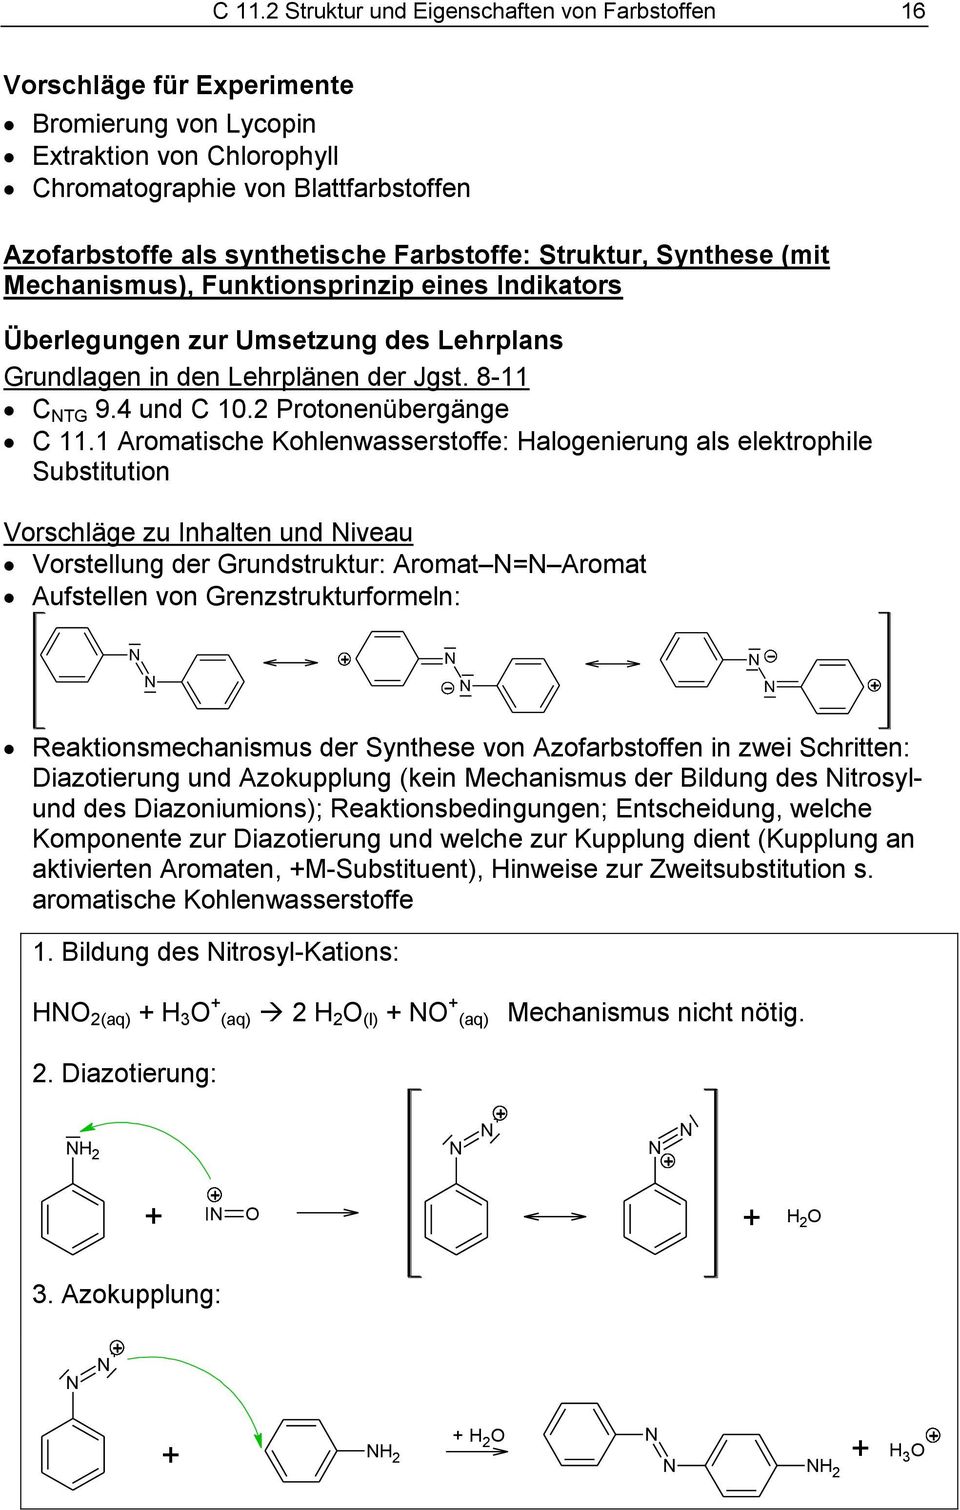 1 Aromatische Kohlenwasserstoffe: alogenierung als elektrophile Substitution Vorschläge zu Inhalten und iveau Vorstellung der Grundstruktur: Aromat = Aromat Aufstellen von Grenzstrukturformeln: